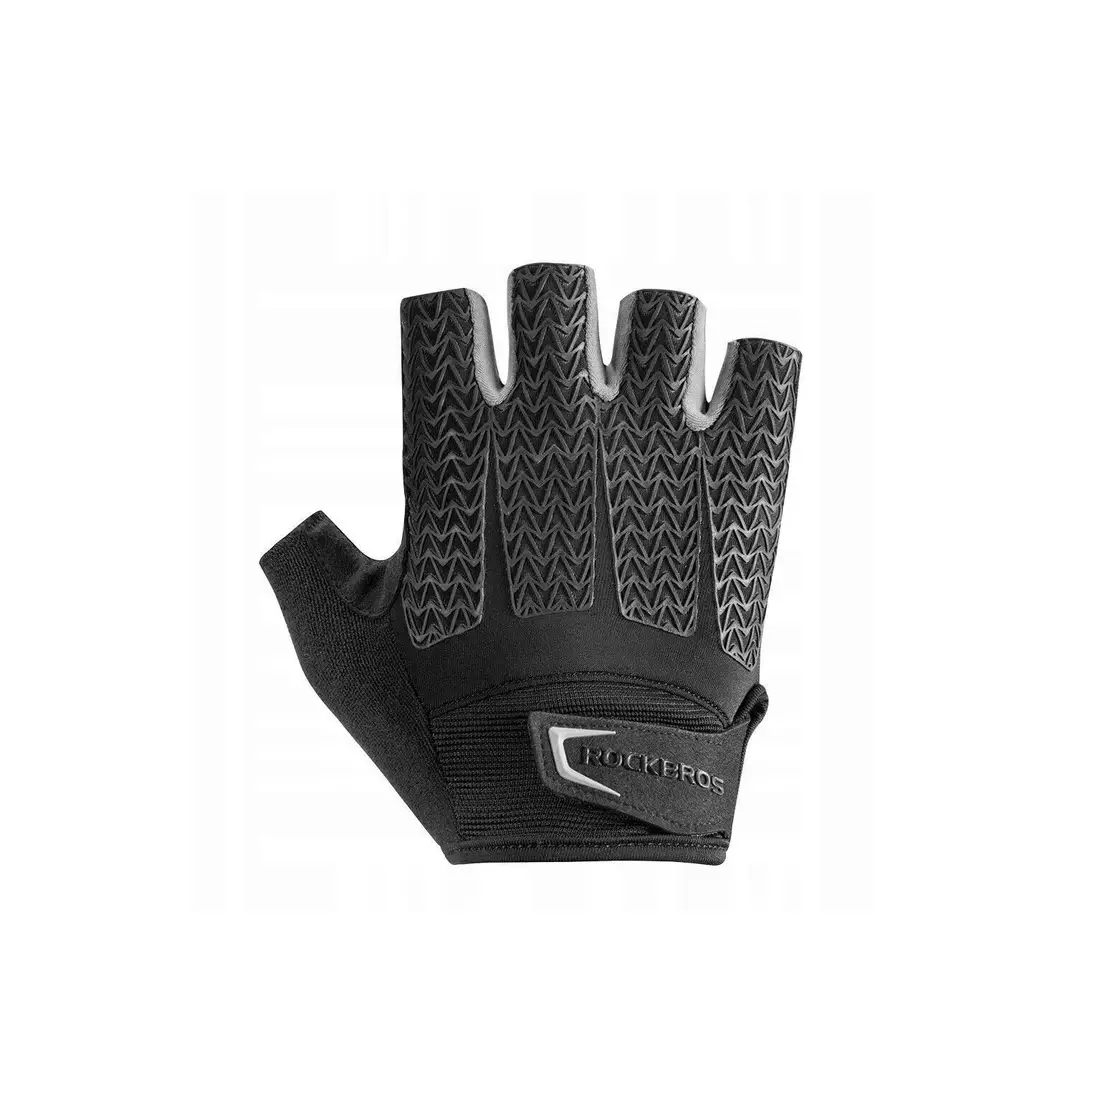 Rockbros cyklistické rukavice, krátký prst, černý-šedý S169BGR